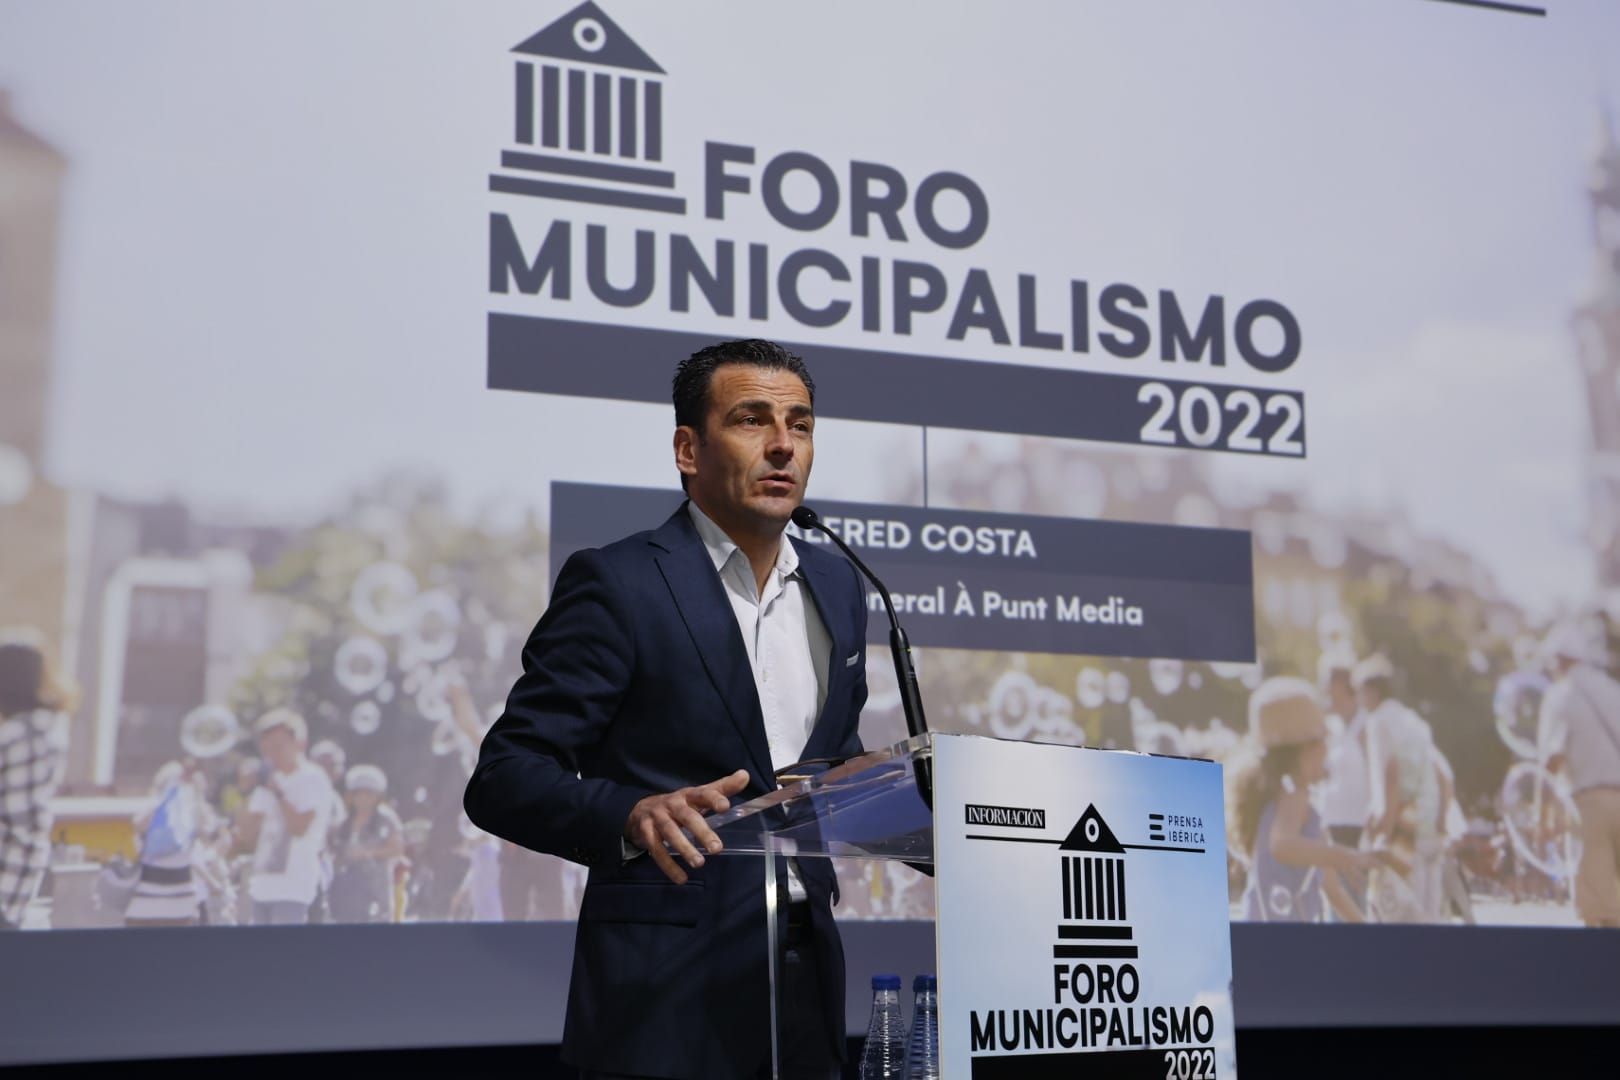 Foro Municipalismo 2022 en el Club Información